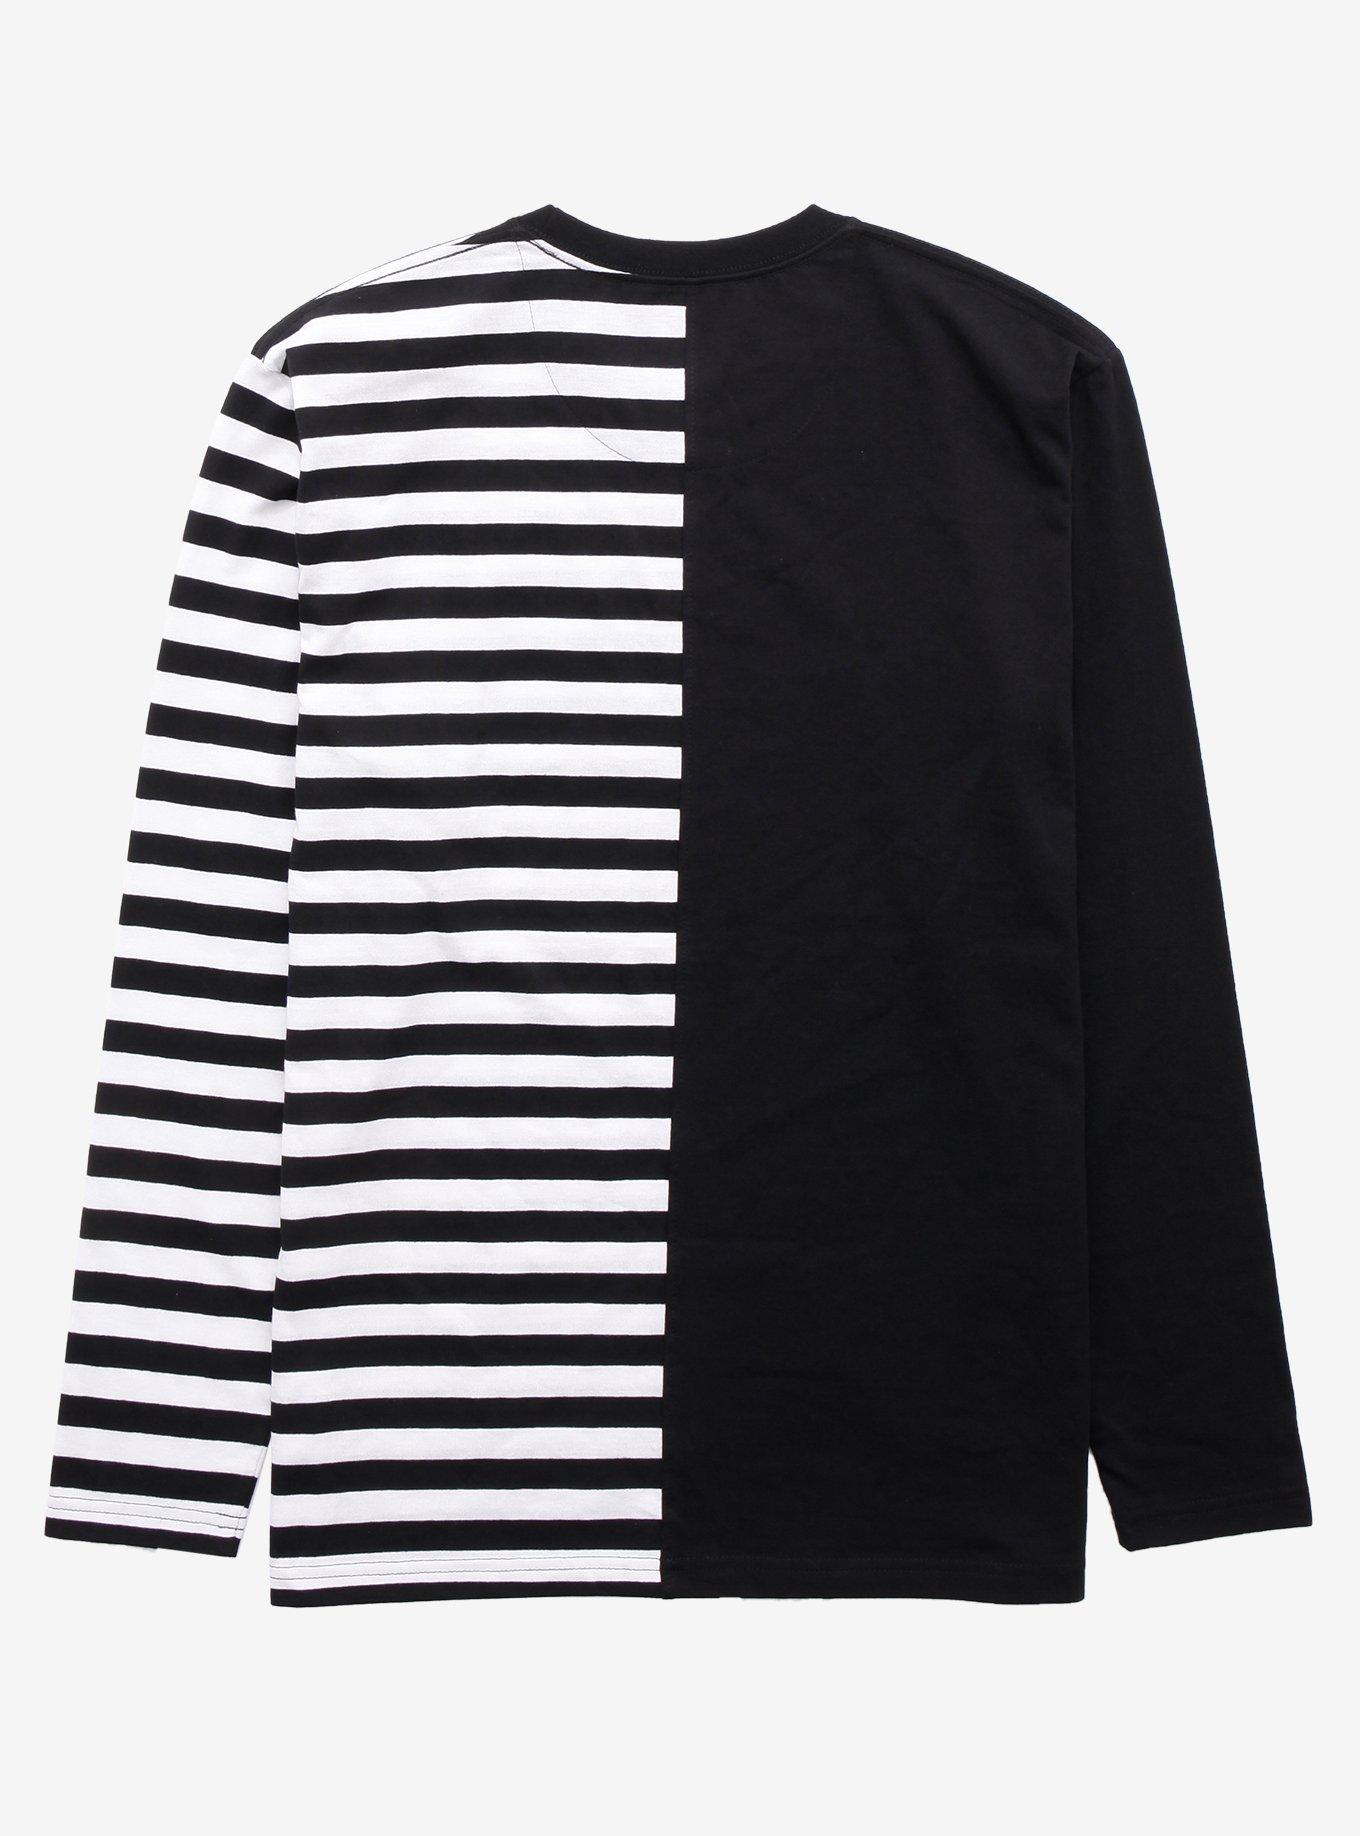 Black & White Stripe Split Long-Sleeve T-Shirt, STRIPES, alternate